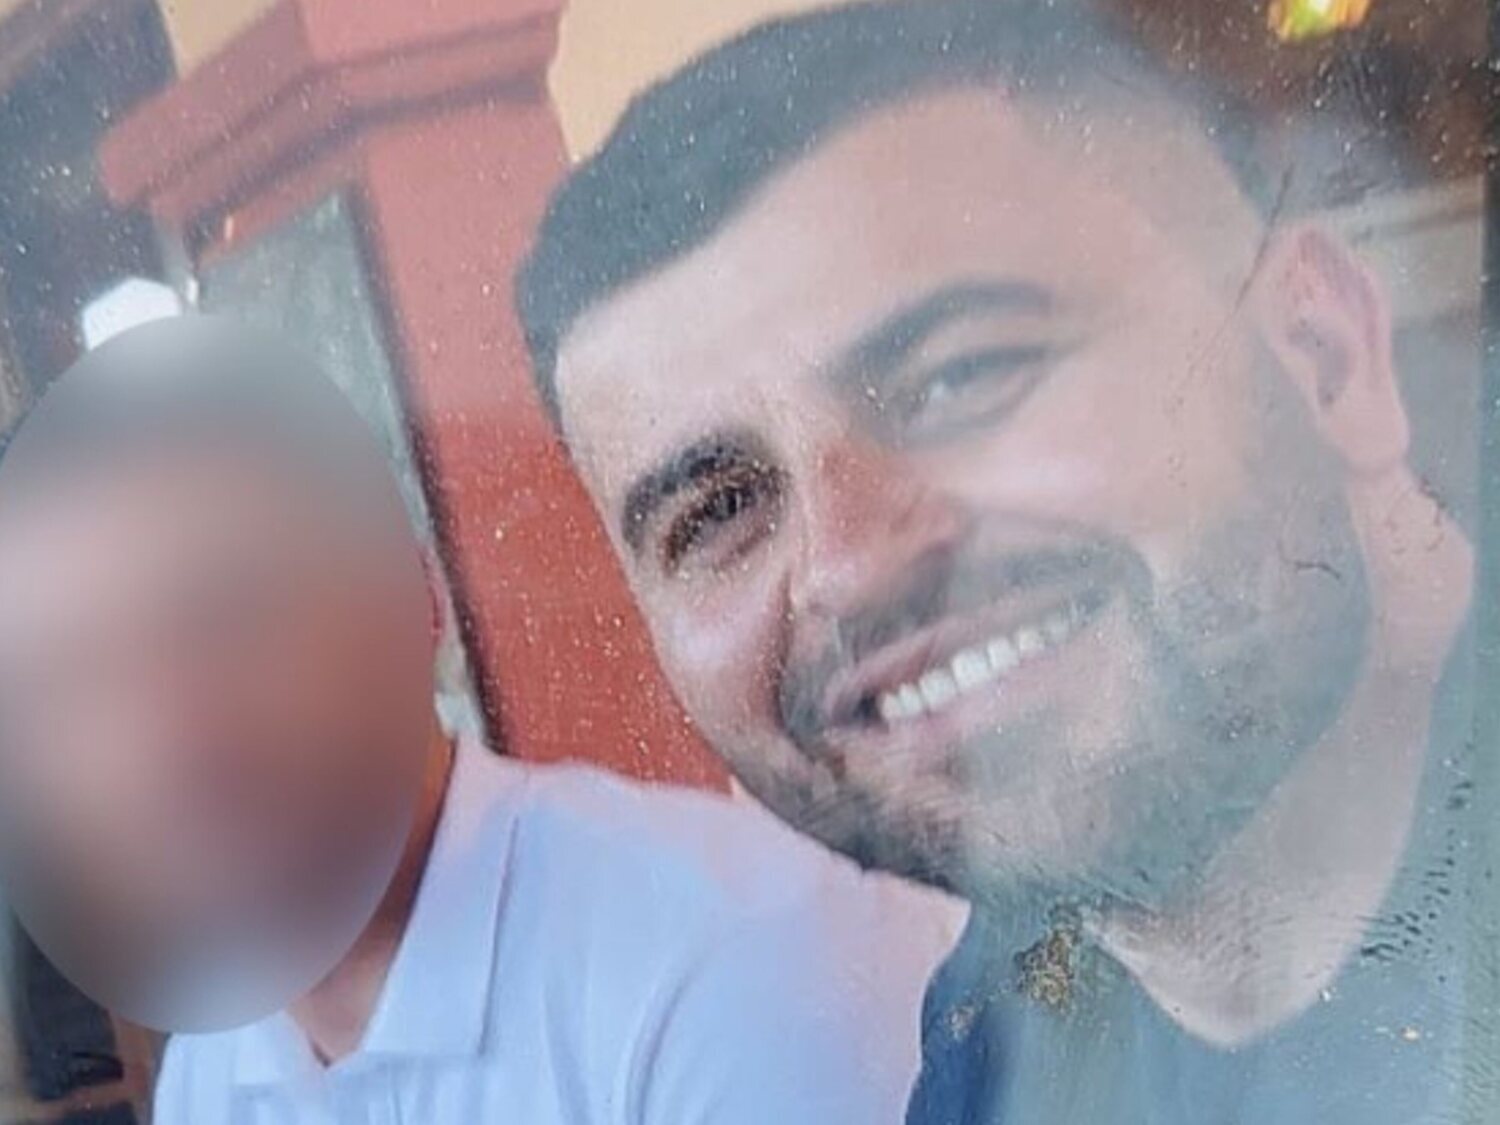 La Guardia Civil pide colaboración ciudadana para localizar a este hombre implicado en una muerte en España